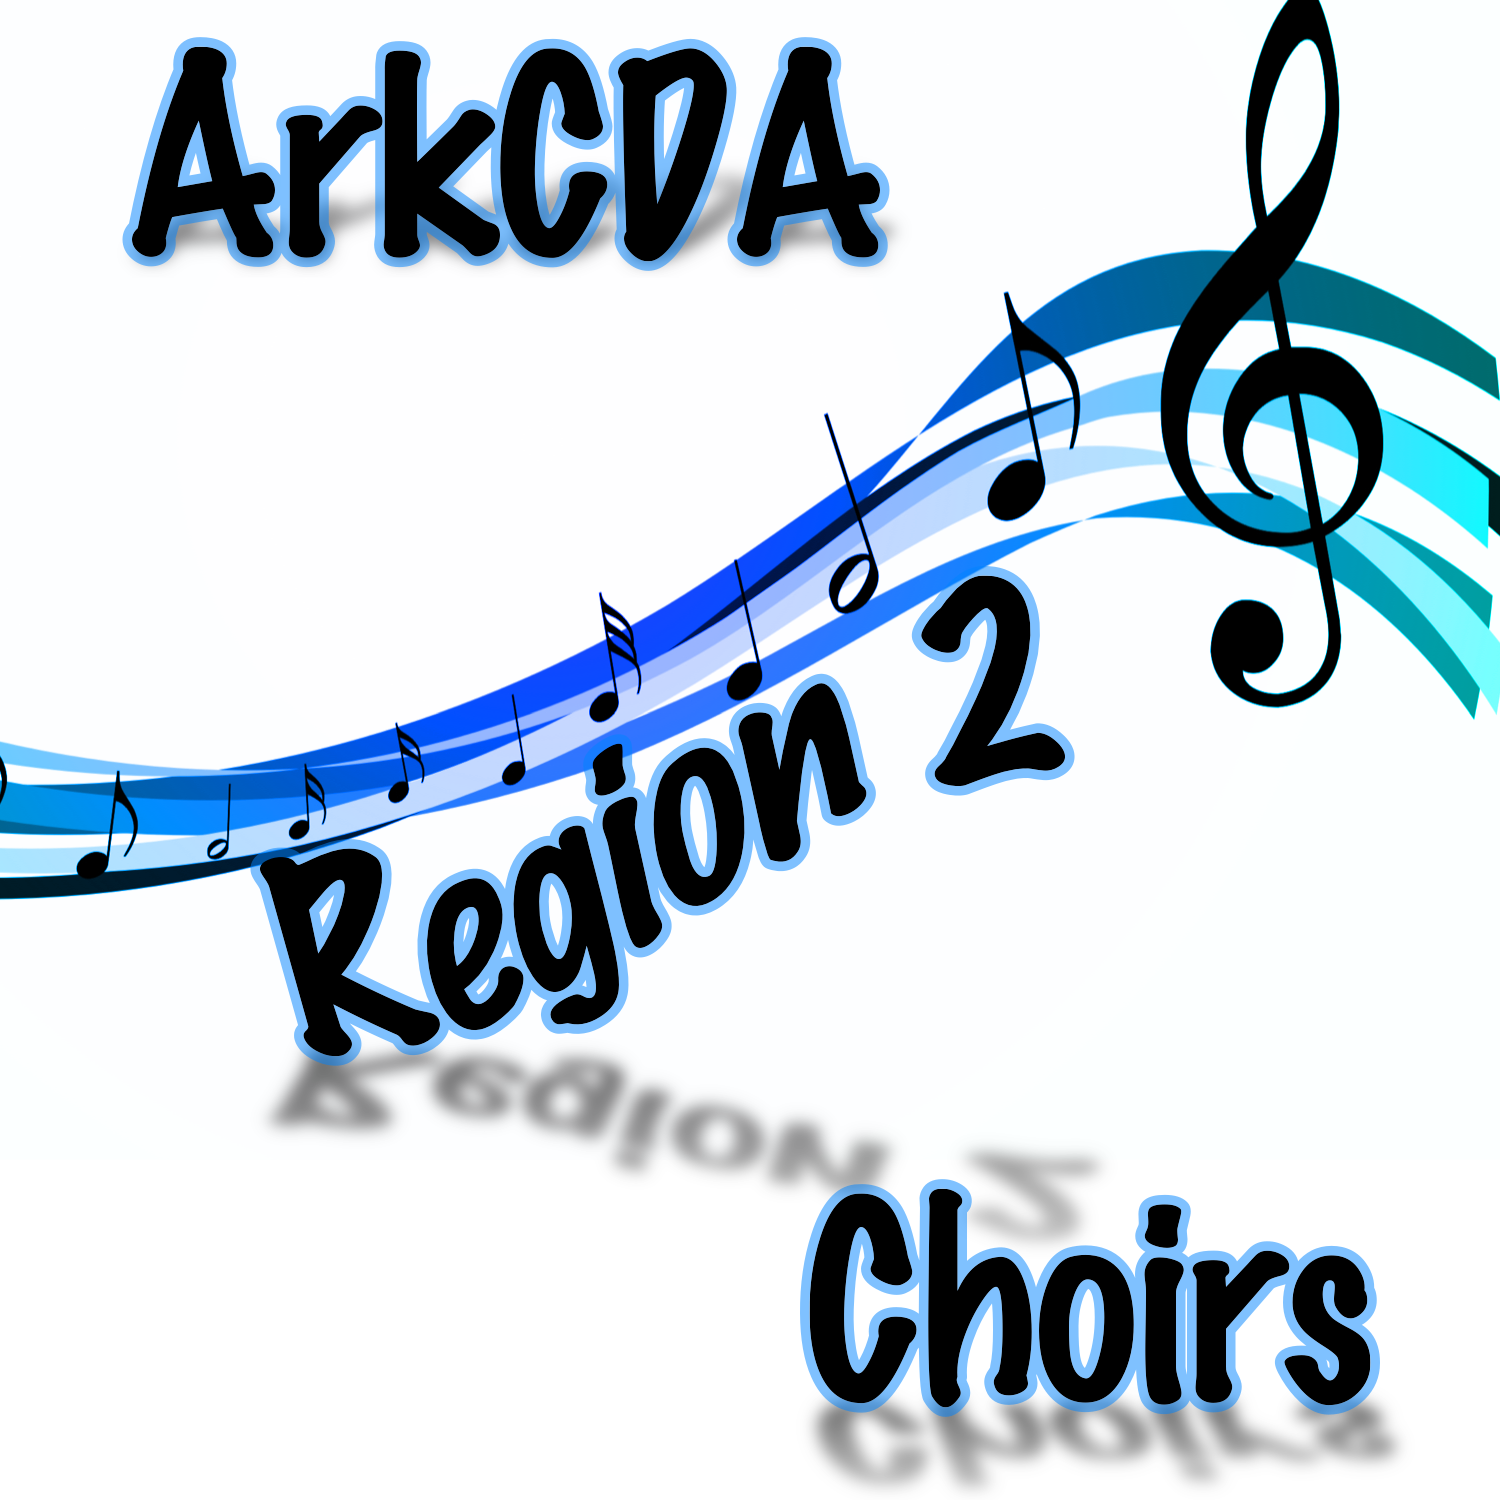 ArkCDA Region 2 All-Region Choirs